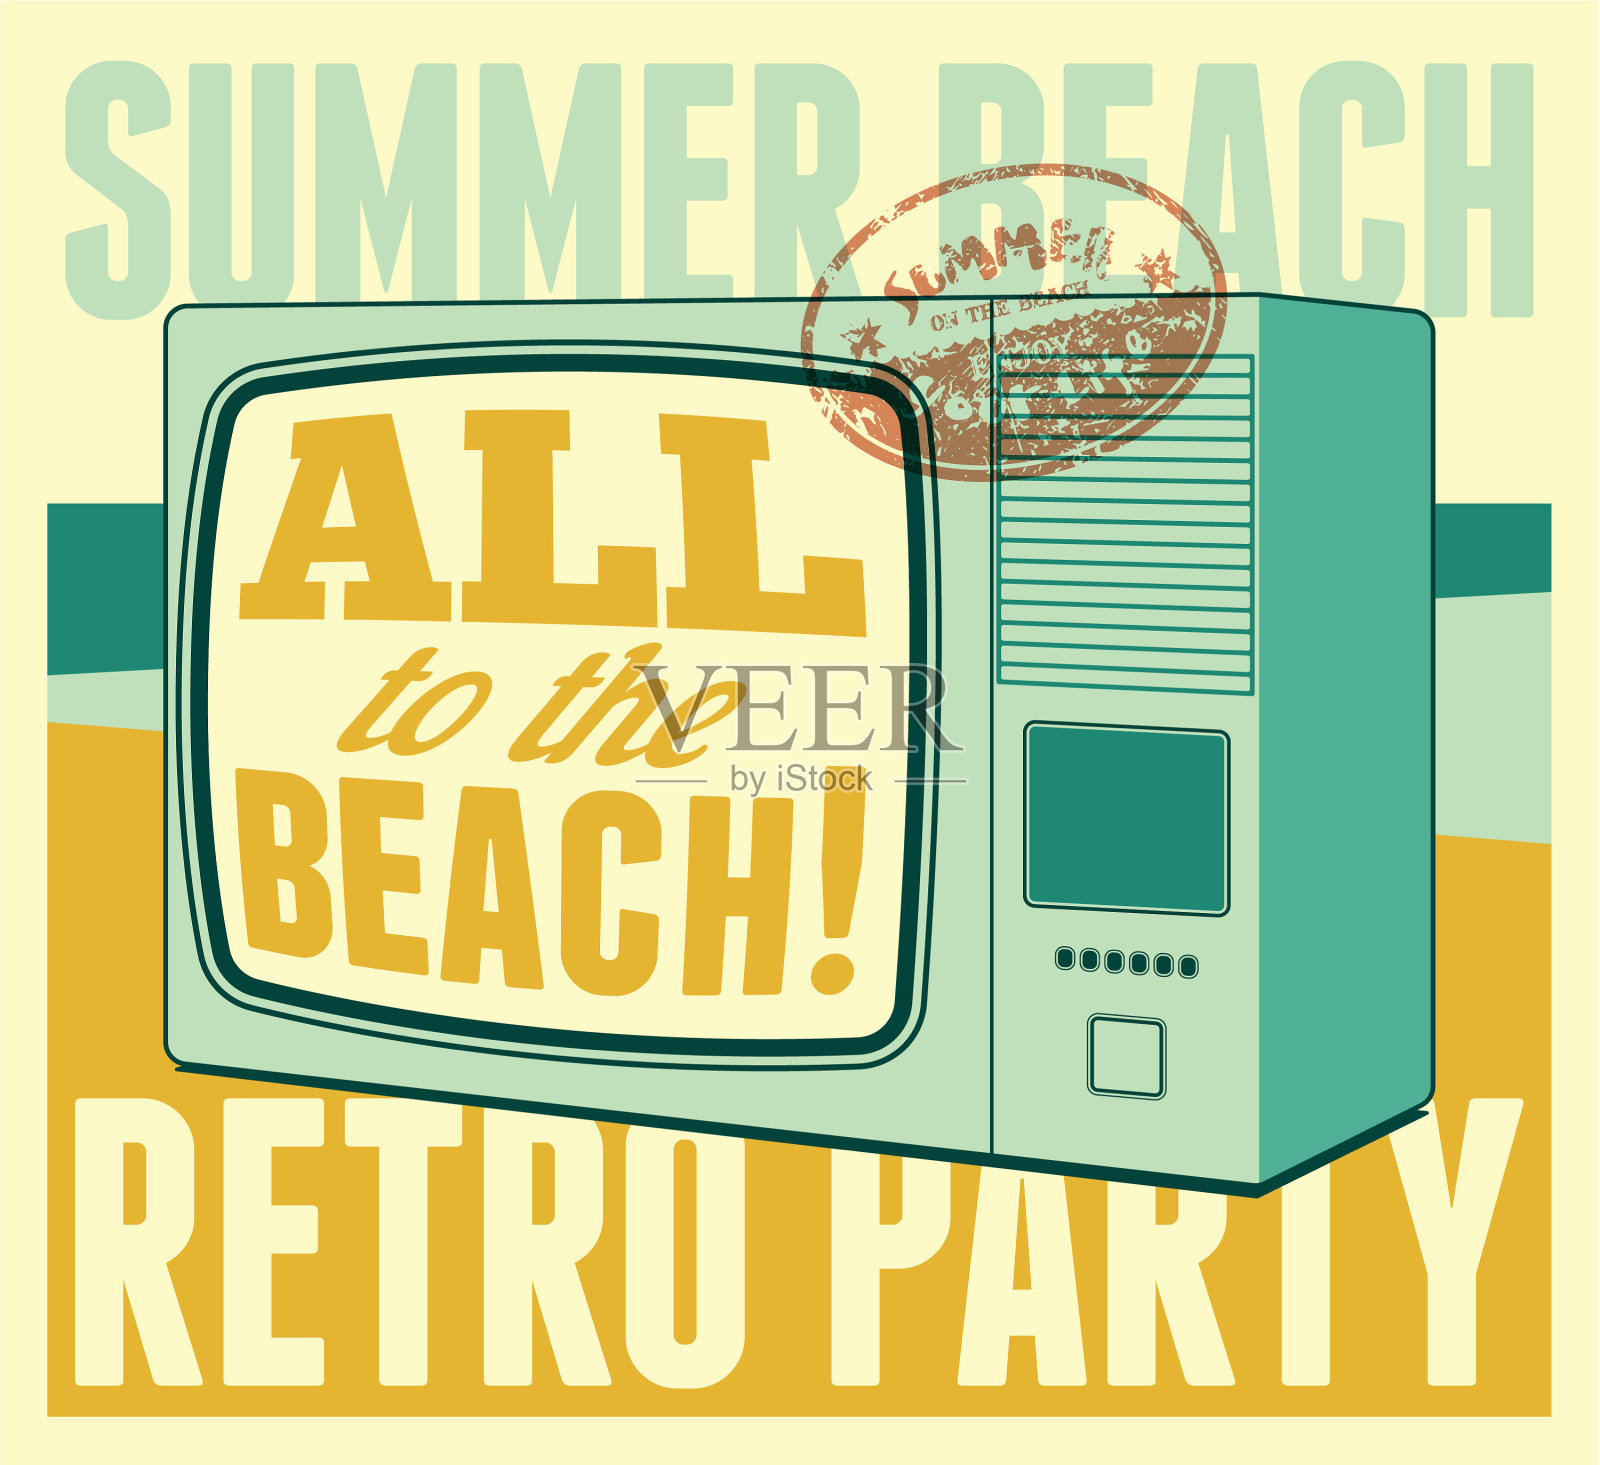 夏季海滩复古派对排印海报设计模板素材